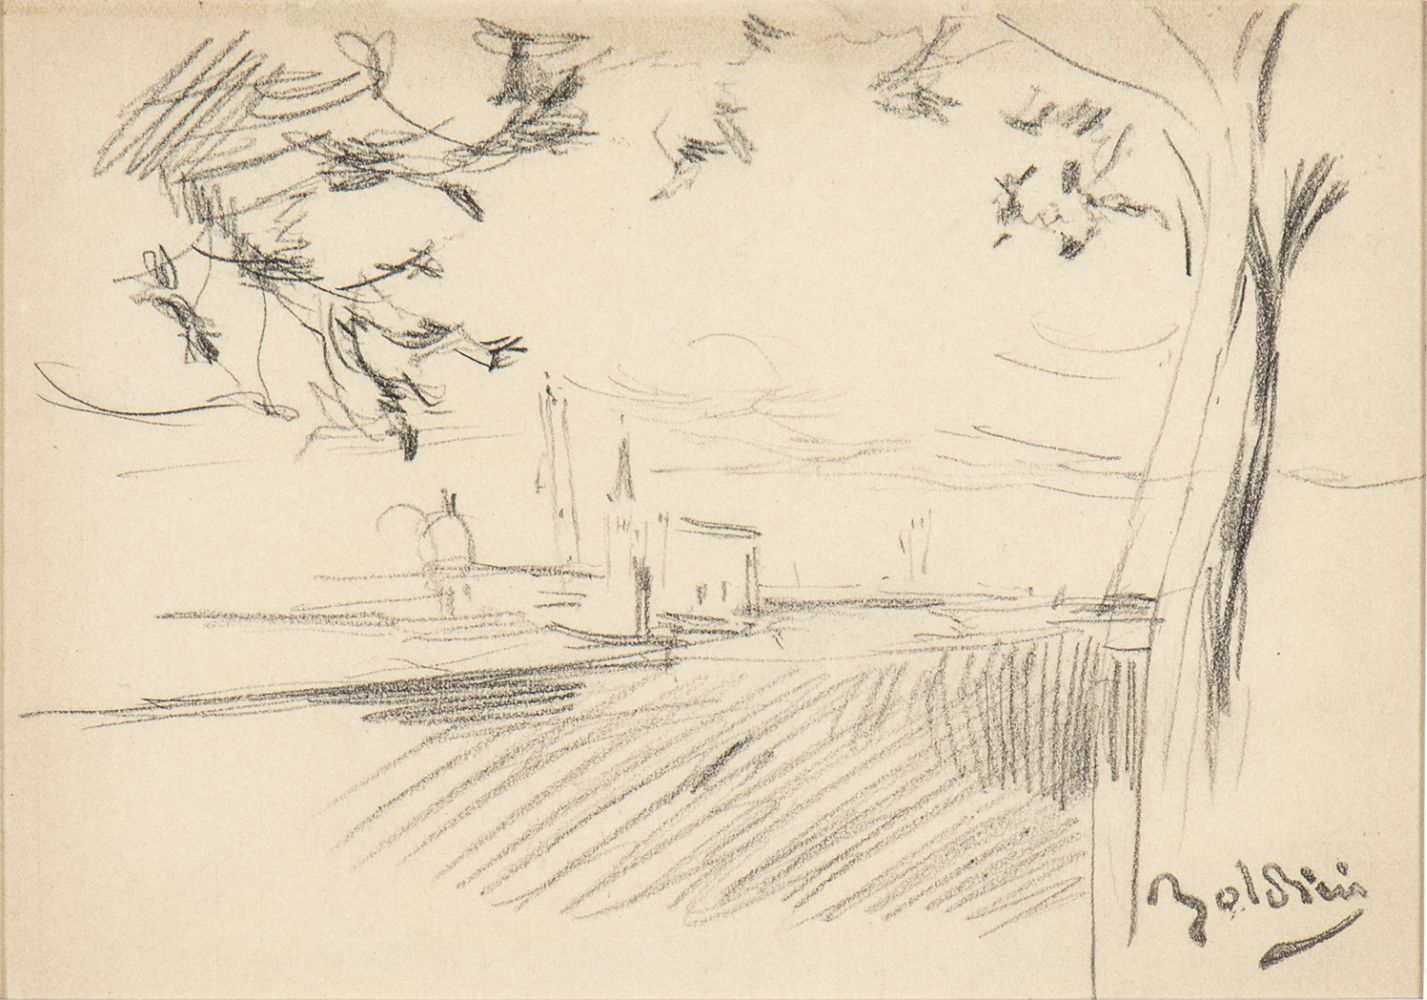 GIOVANNI BOLDINI (Ferrara, 1842 - Paris, 1931): View of a cathedral